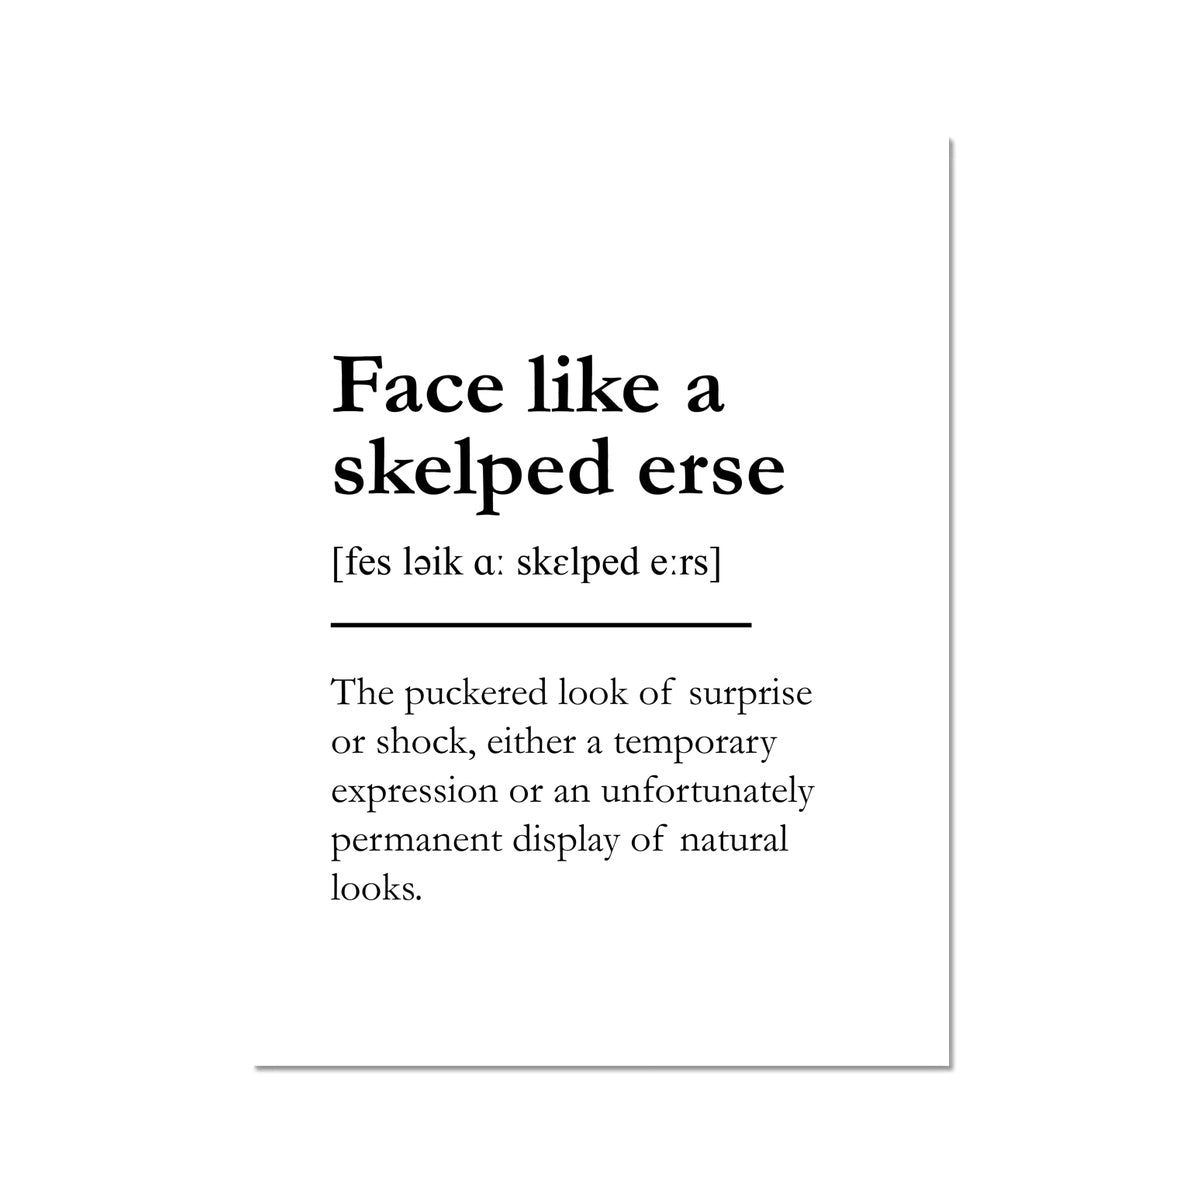 "Face like a skelped erse" - Scottish Slang